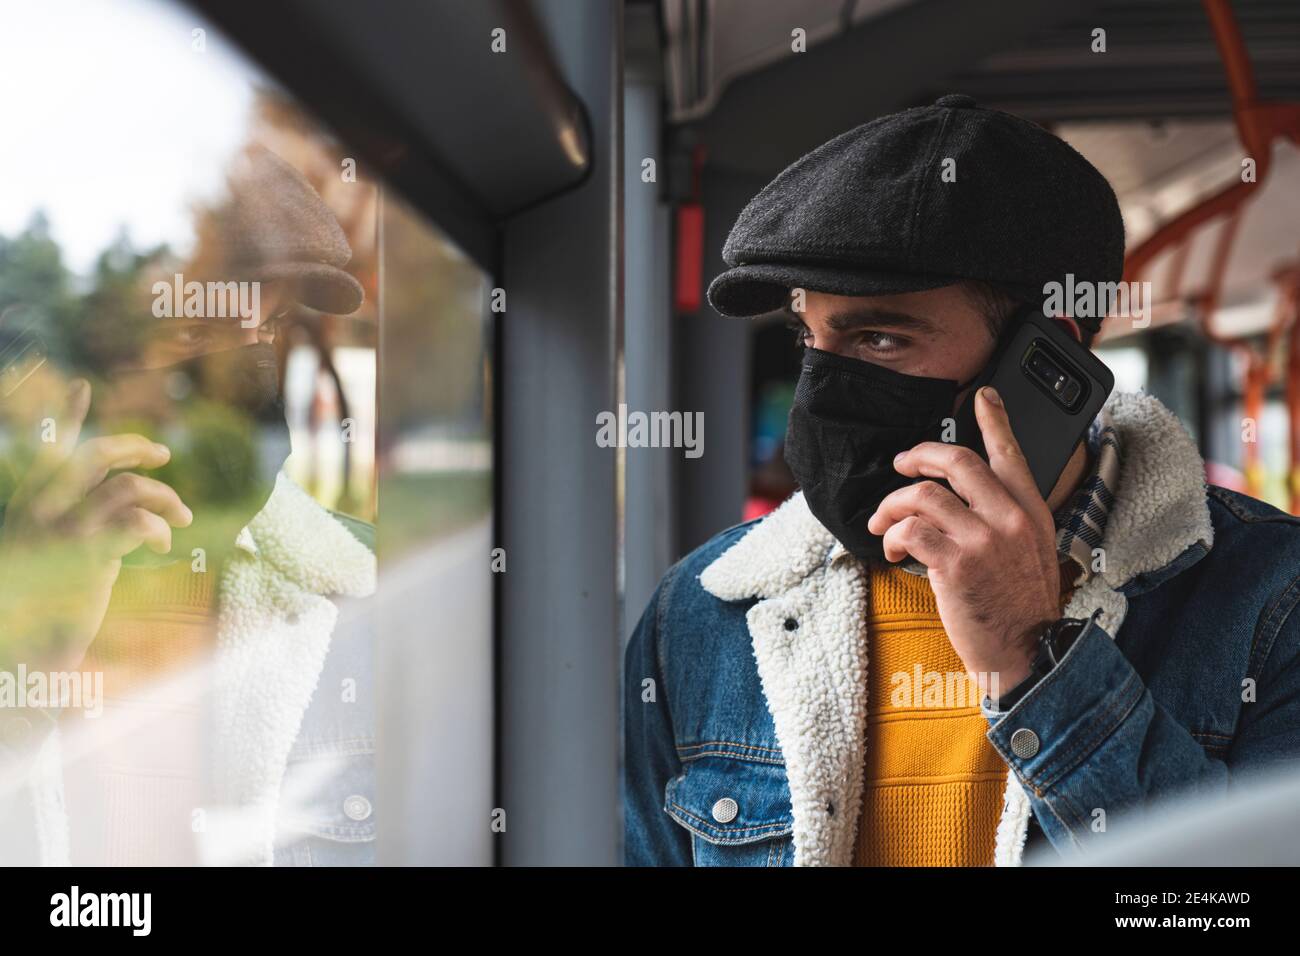 Transport portant un masque de protection lors d'un appel téléphonique dans le bus Banque D'Images